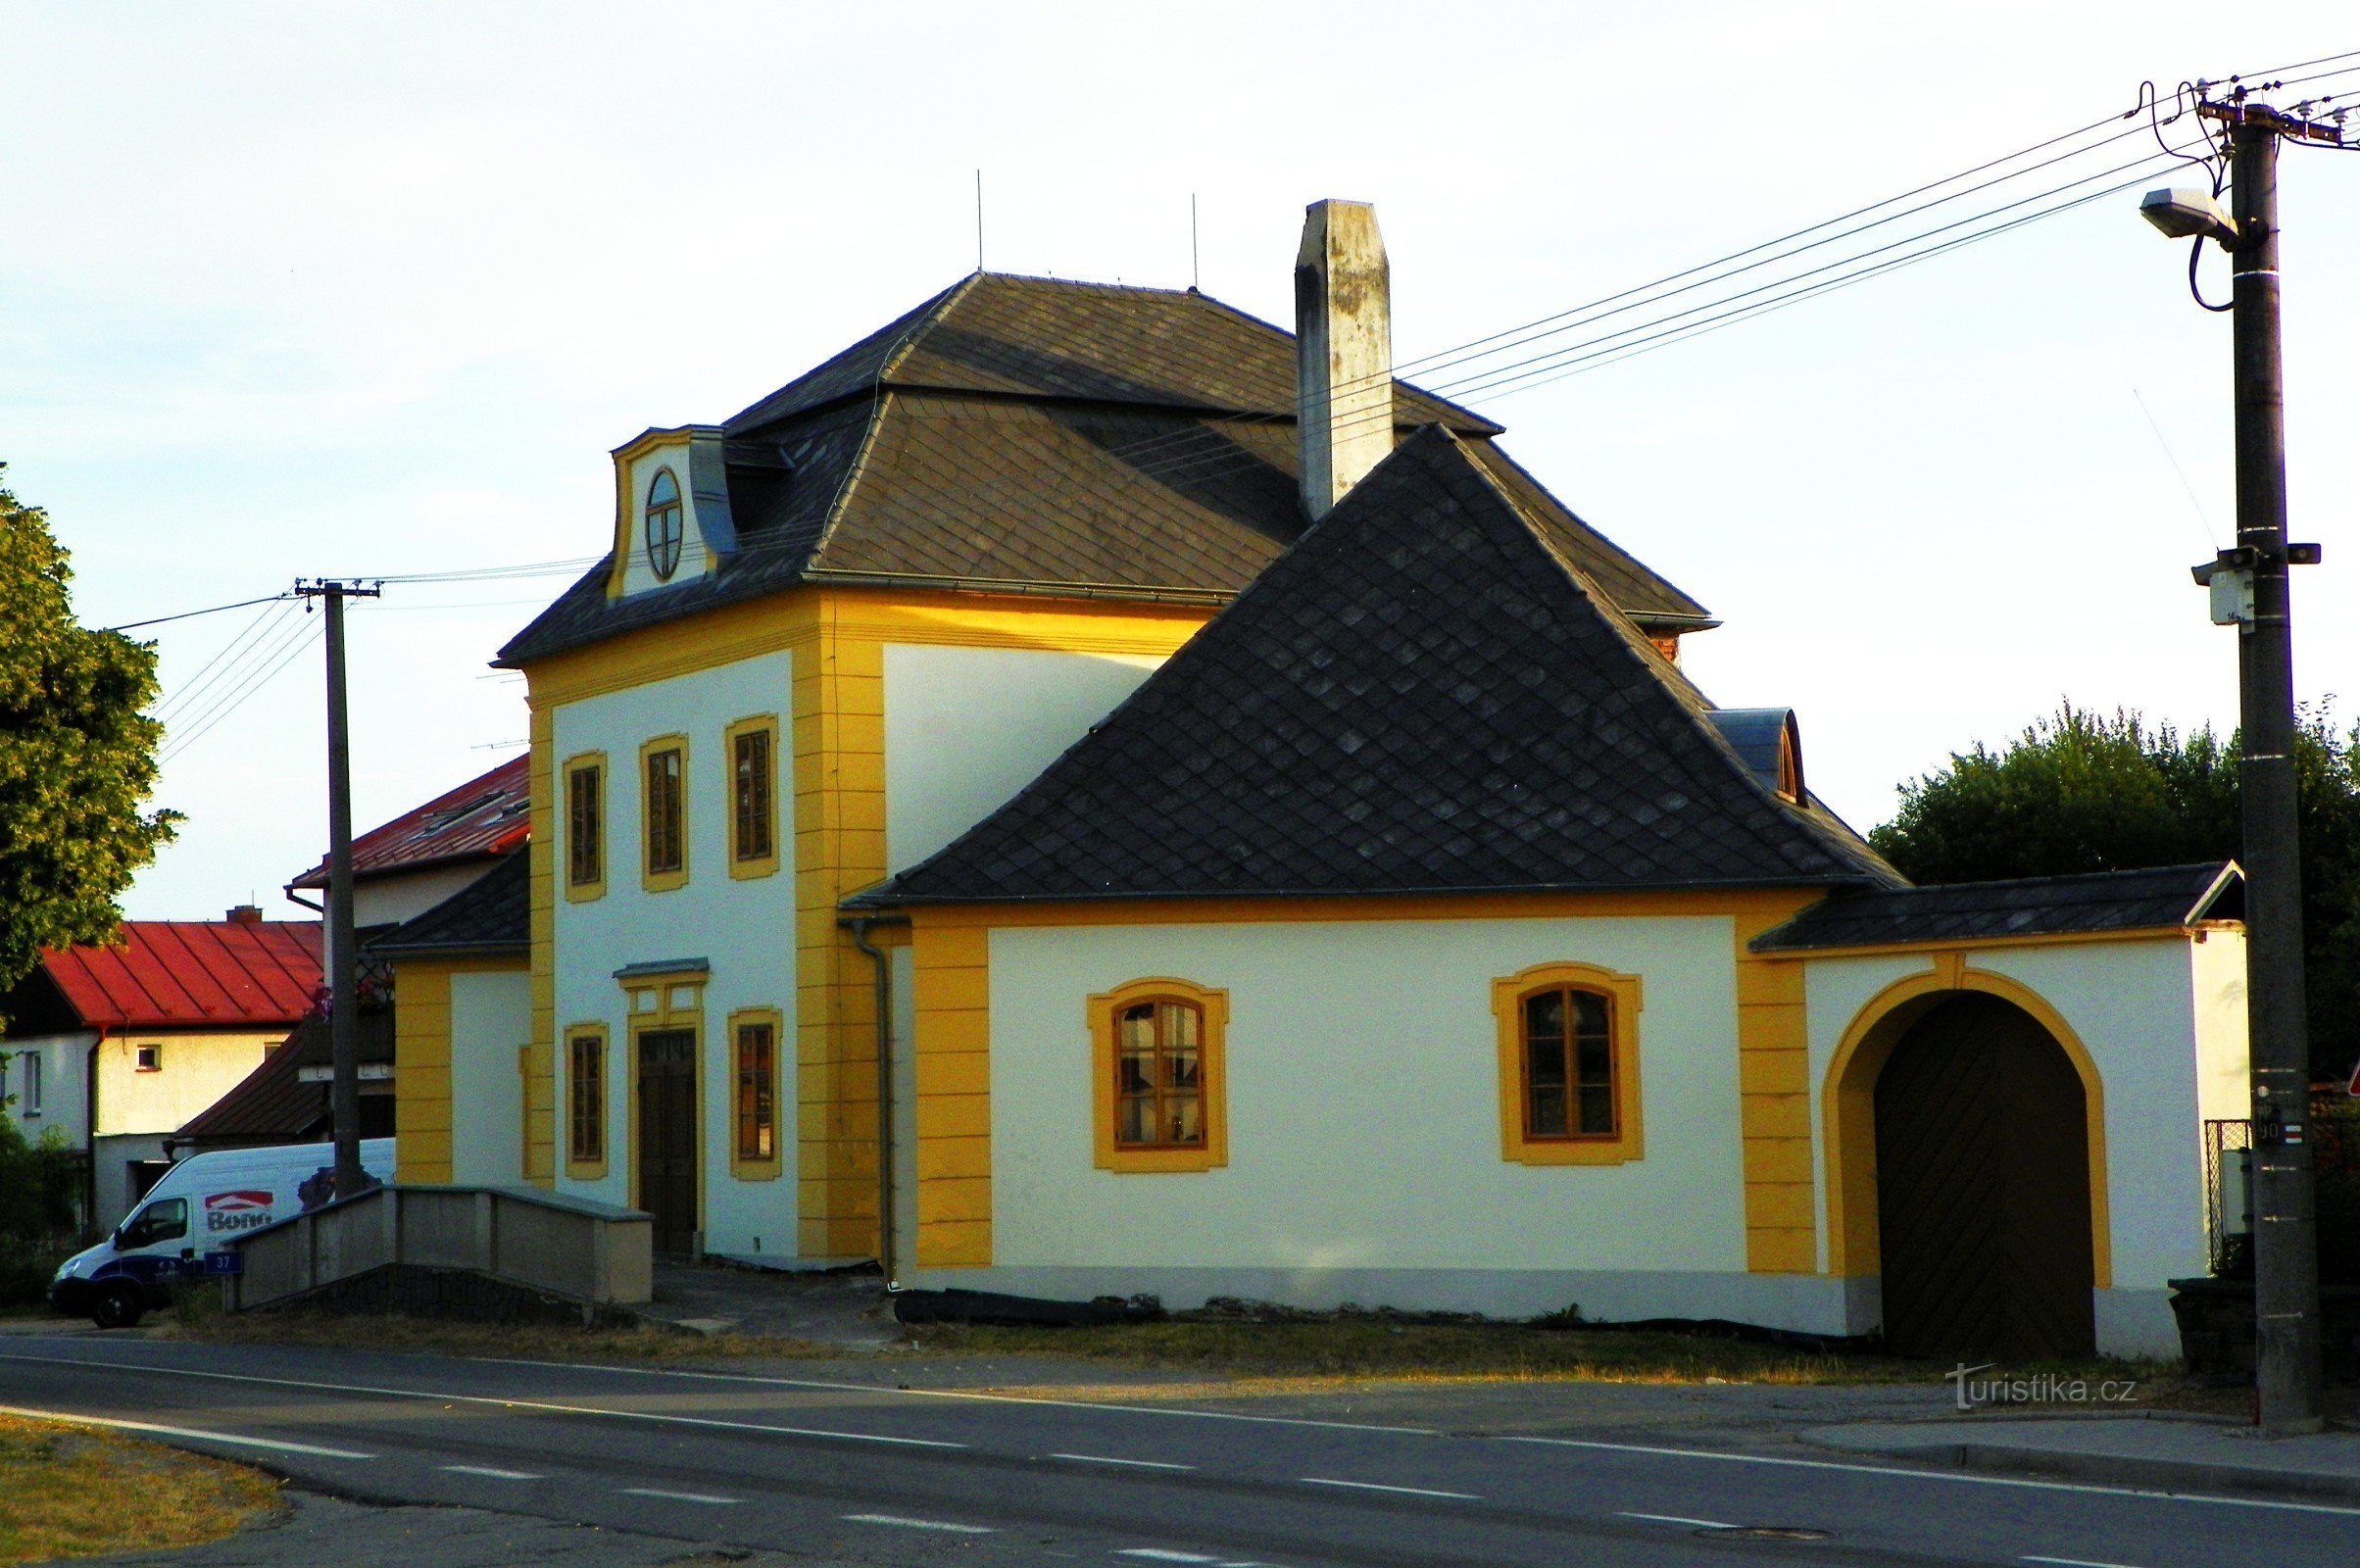 Santinin majatalo Ostrov nad Oslavoussa